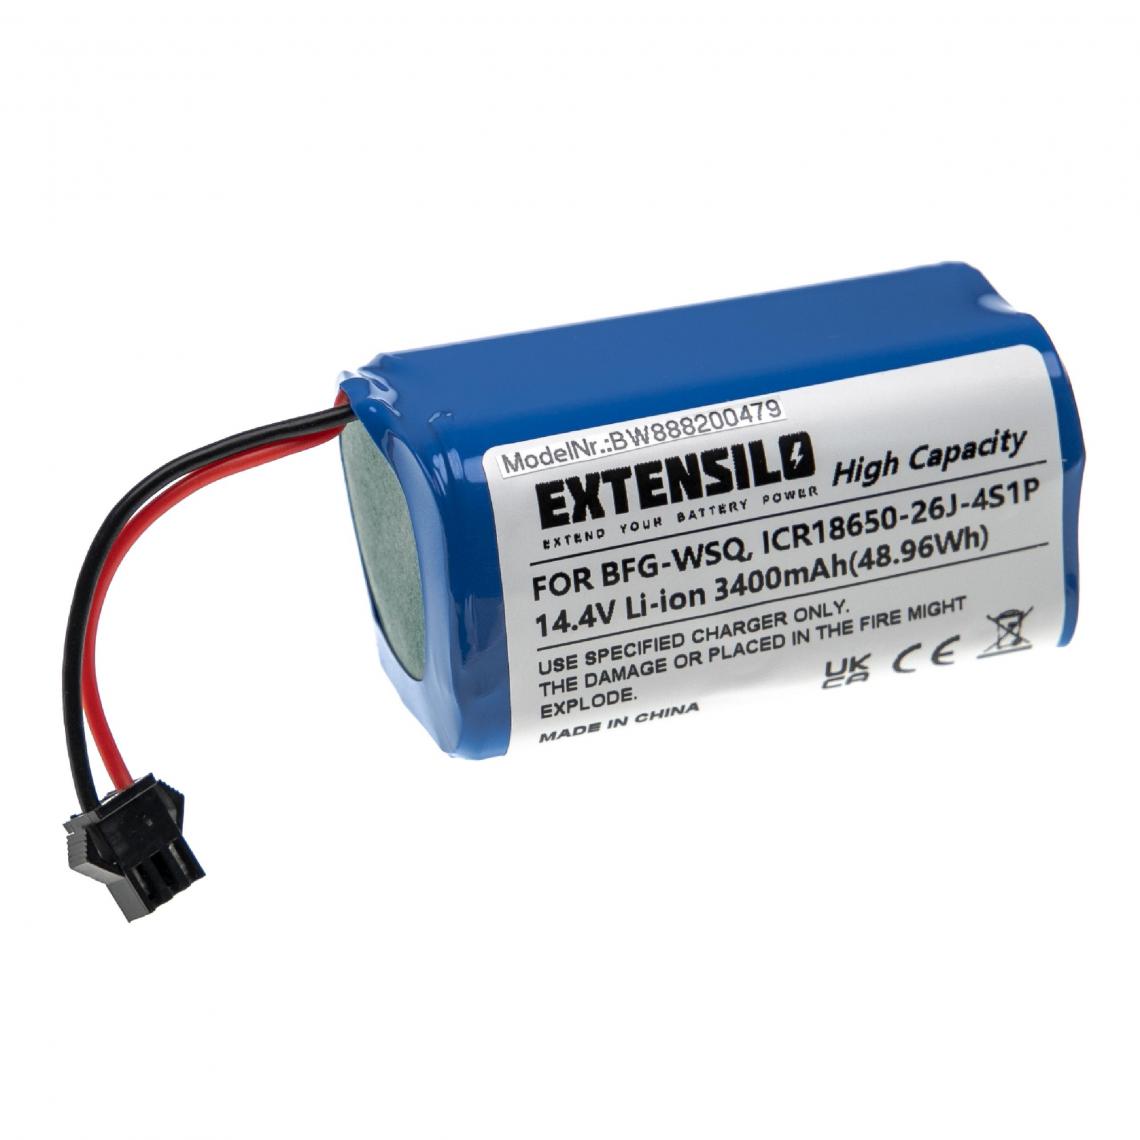 Vhbw - EXTENSILO Batterie compatible avec Ecovacs Deebot CEN360, CEN361, CEN546, DH35, DH43 aspirateur, robot électroménager (3 400mAh, 14,4V, Li-ion) - Accessoire entretien des sols